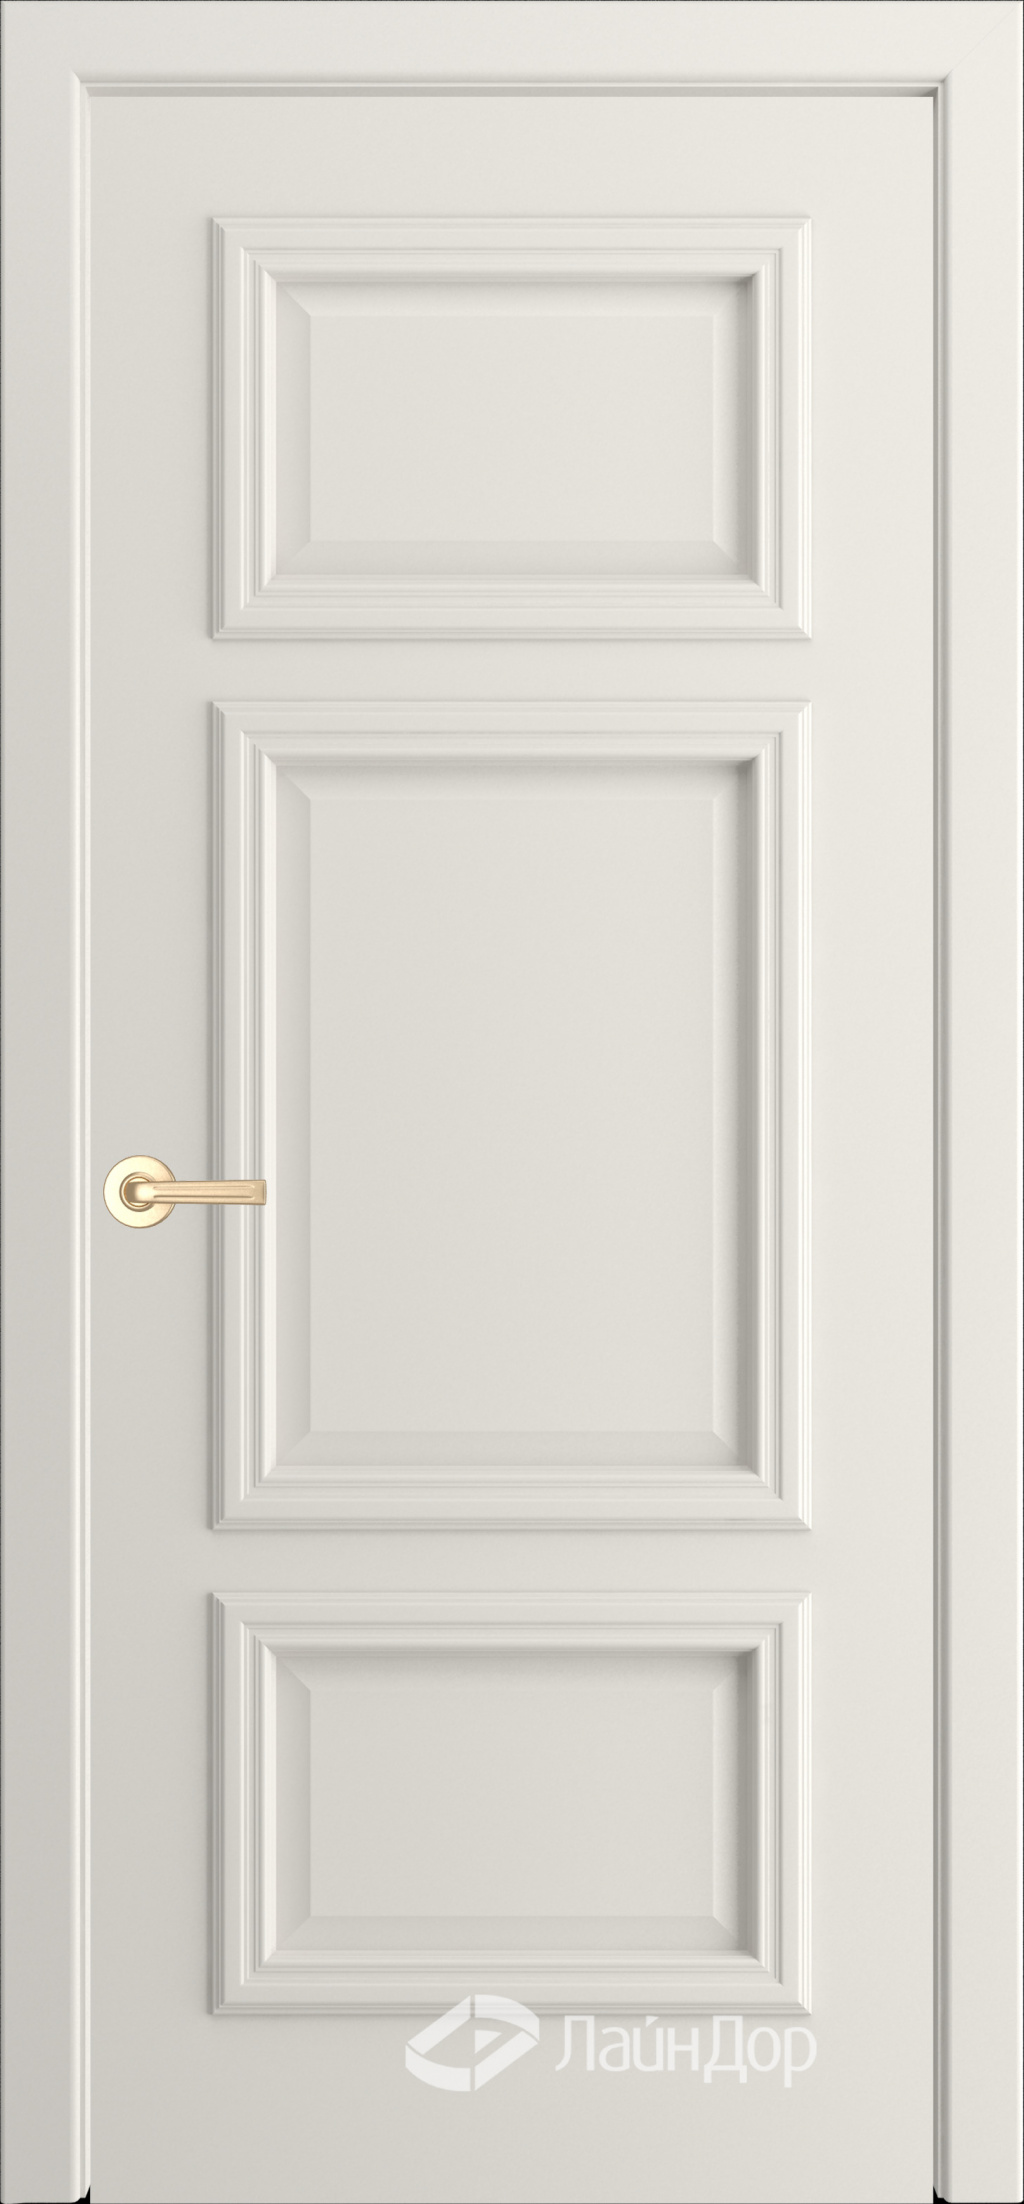 ЛайнДор Межкомнатная дверь Афина ДГ, арт. 10138 - фото №4